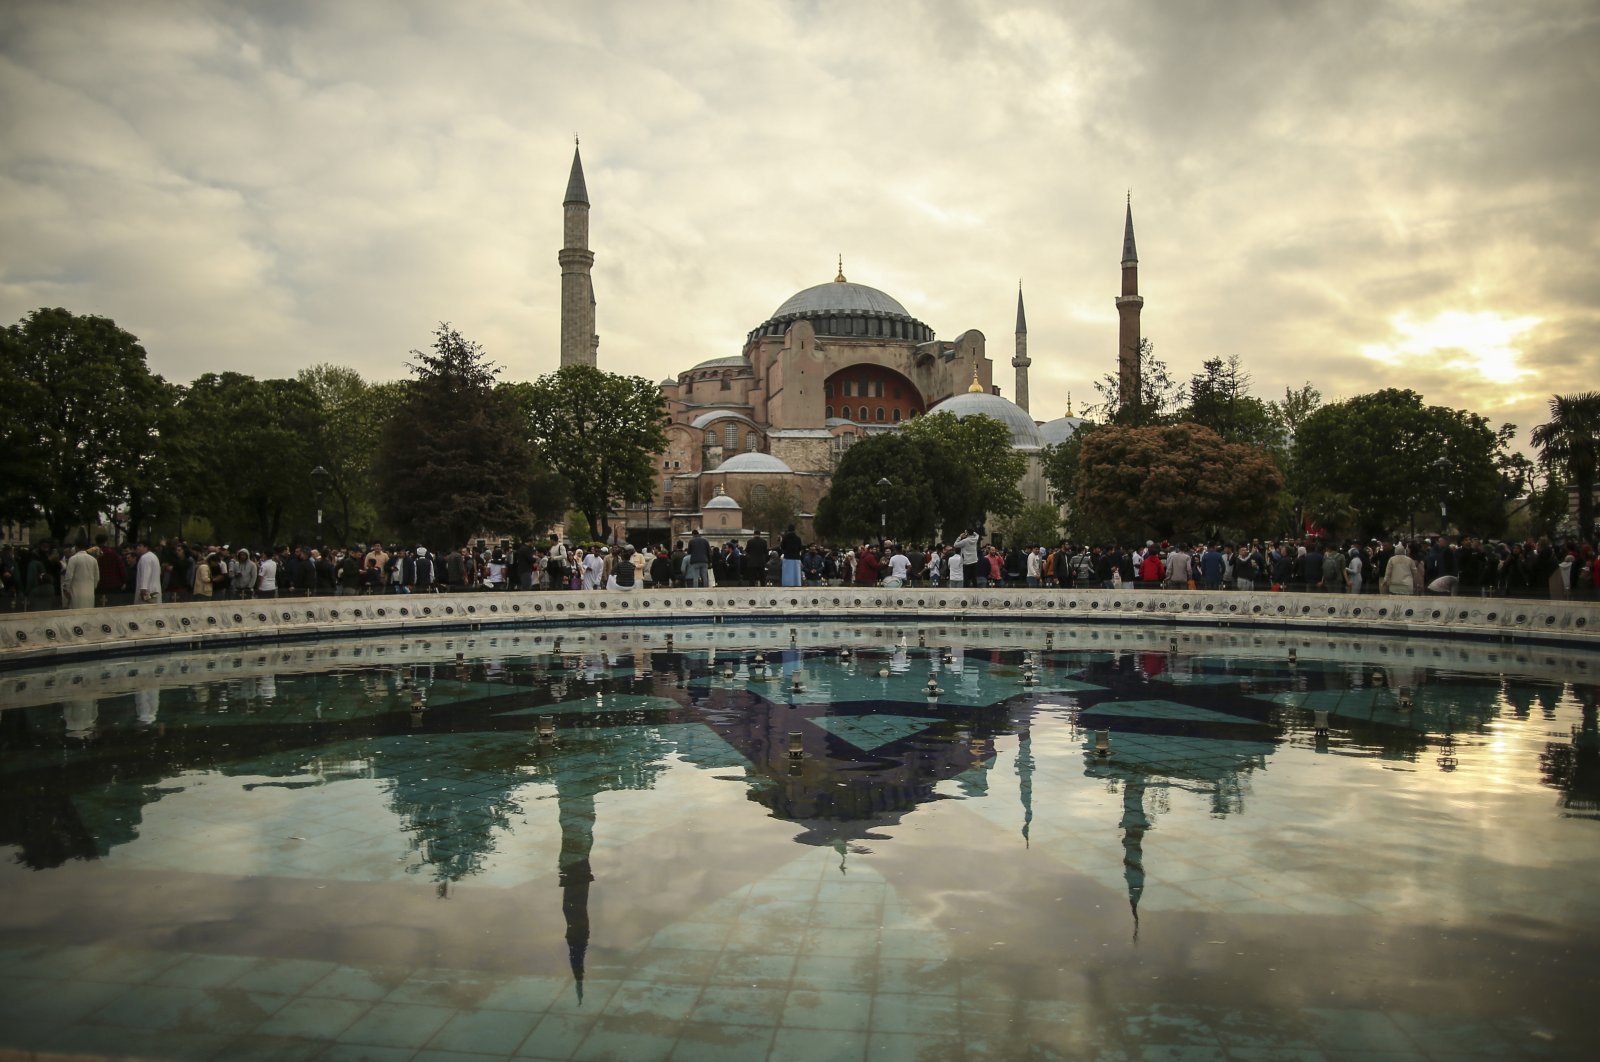 Turki rayakan peringatan 569 tahun penaklukan Istanbul